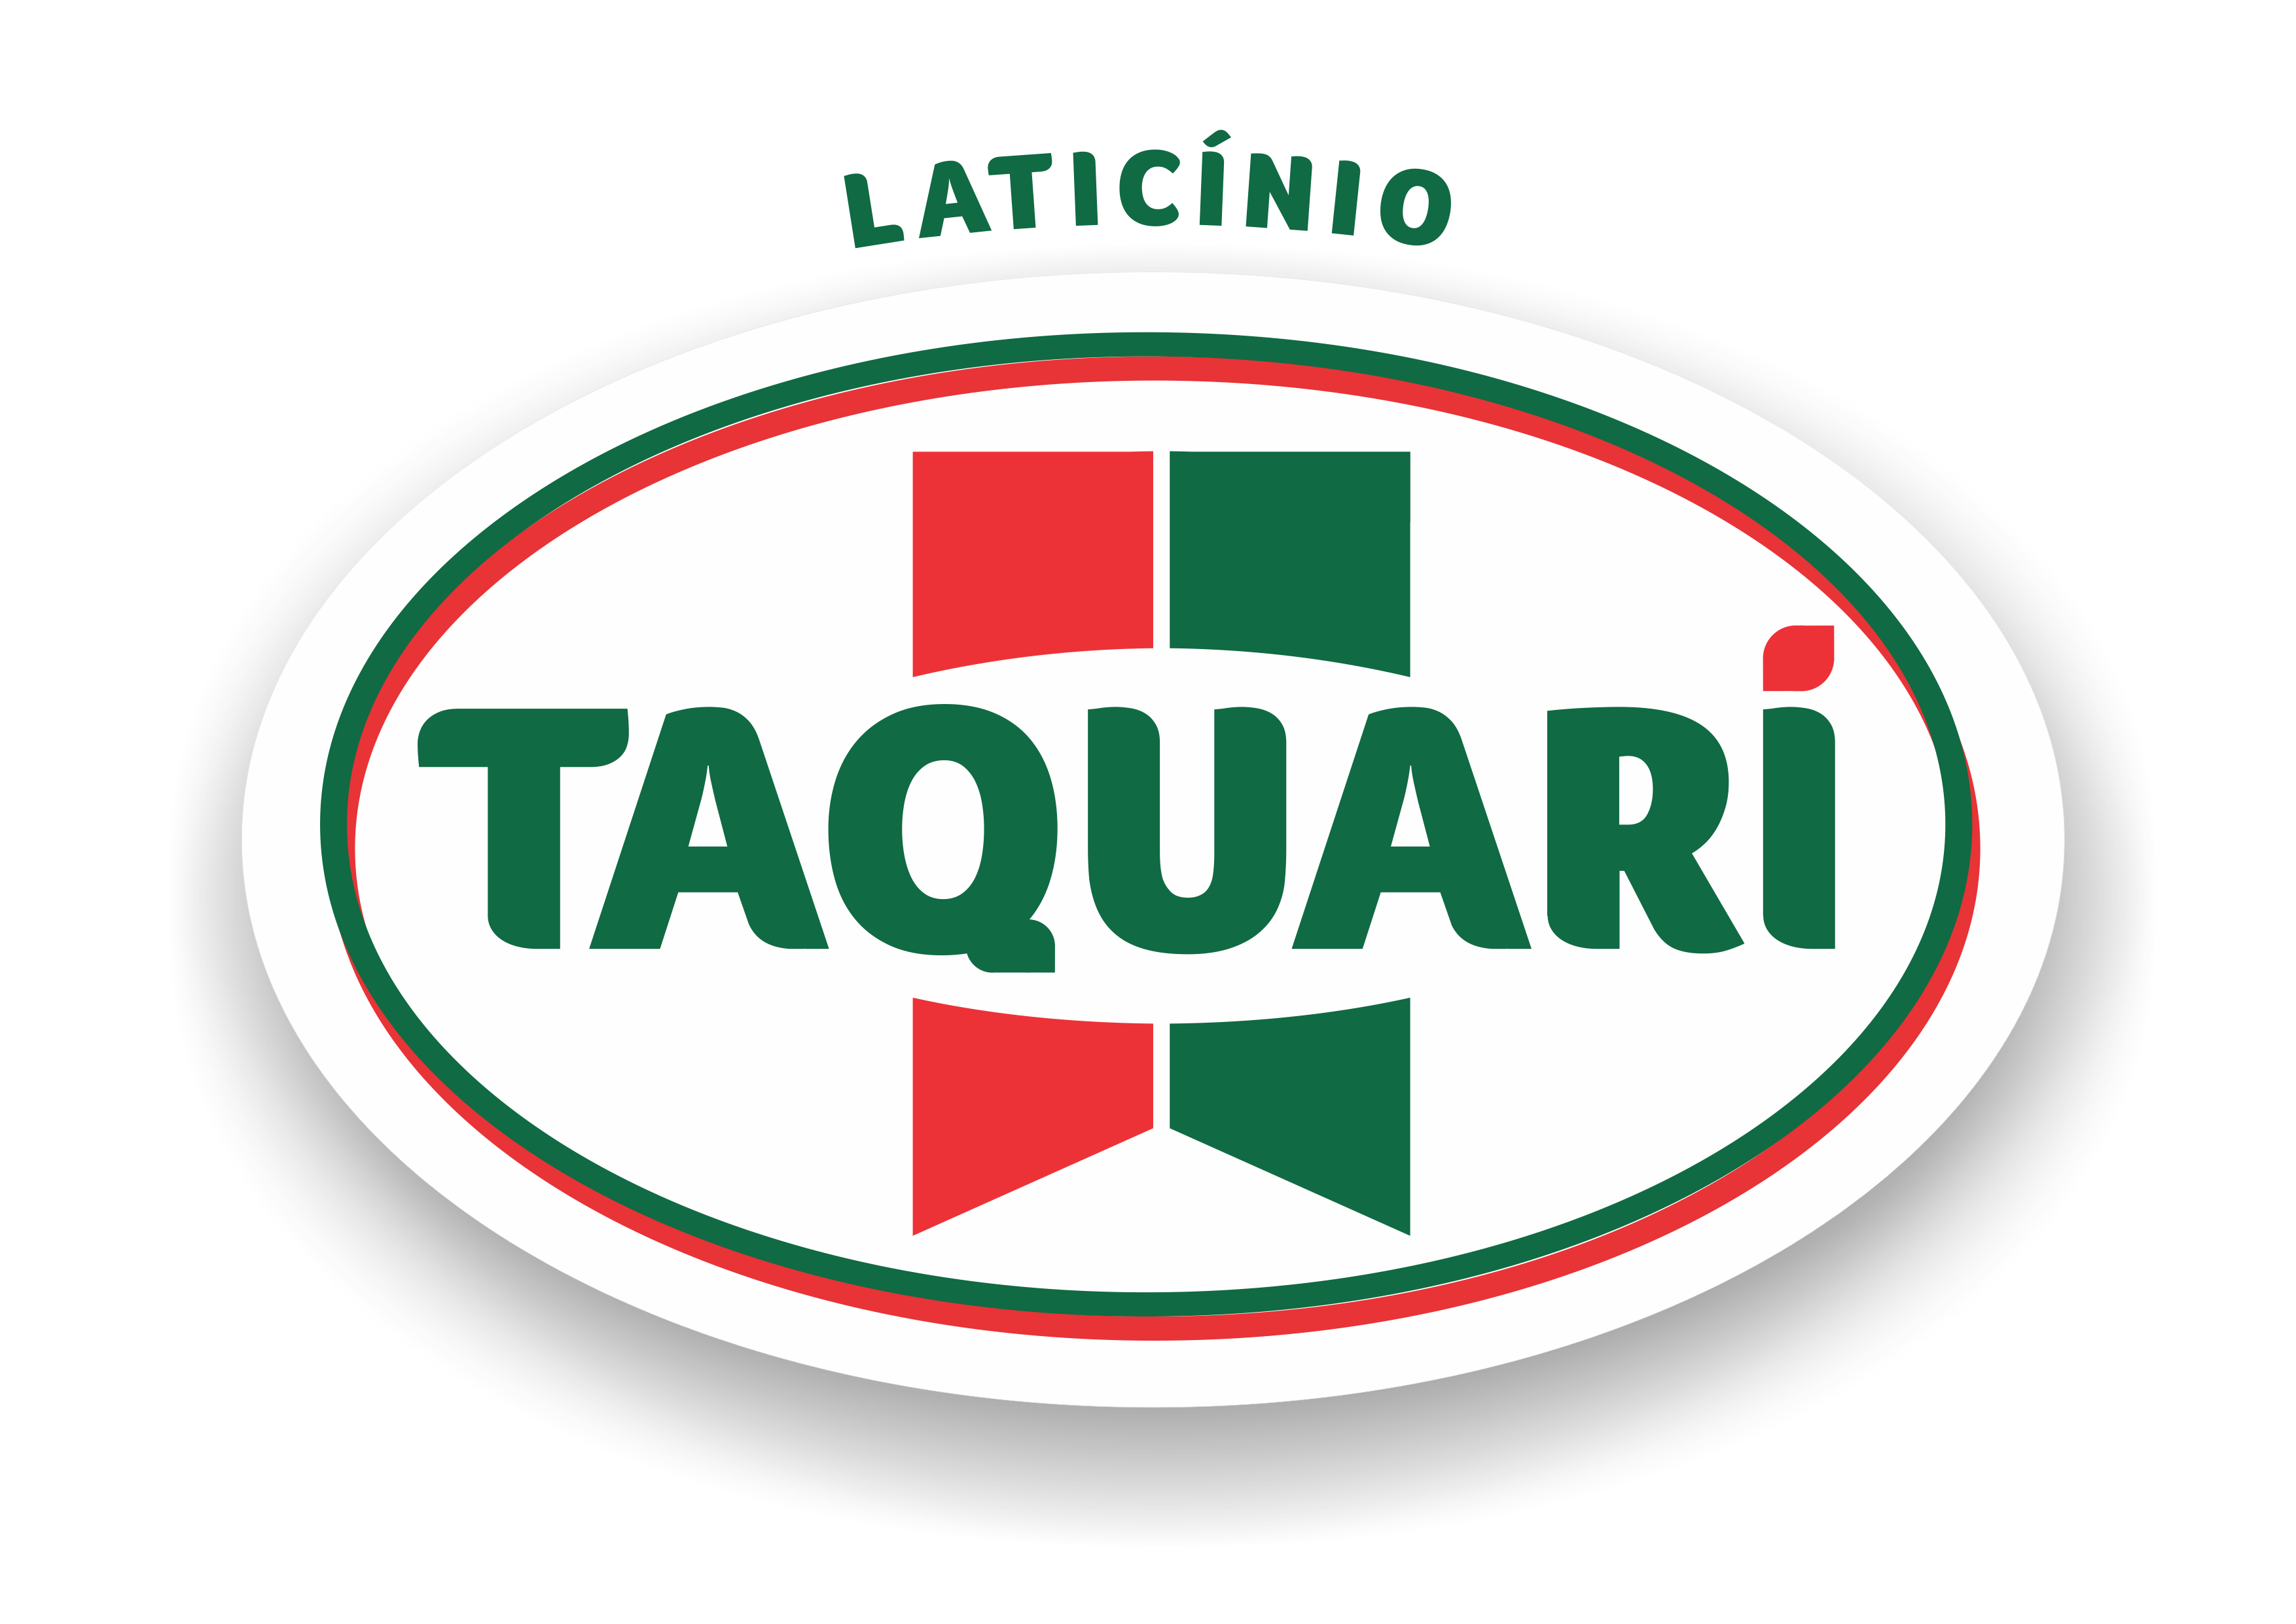 Laticinios Taquari